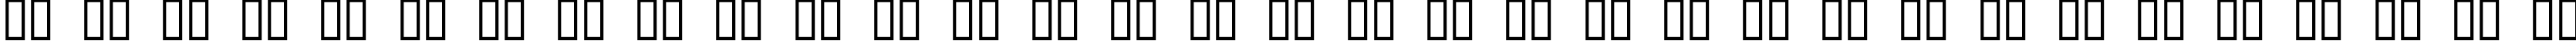 Пример написания русского алфавита шрифтом Hyundai Normal